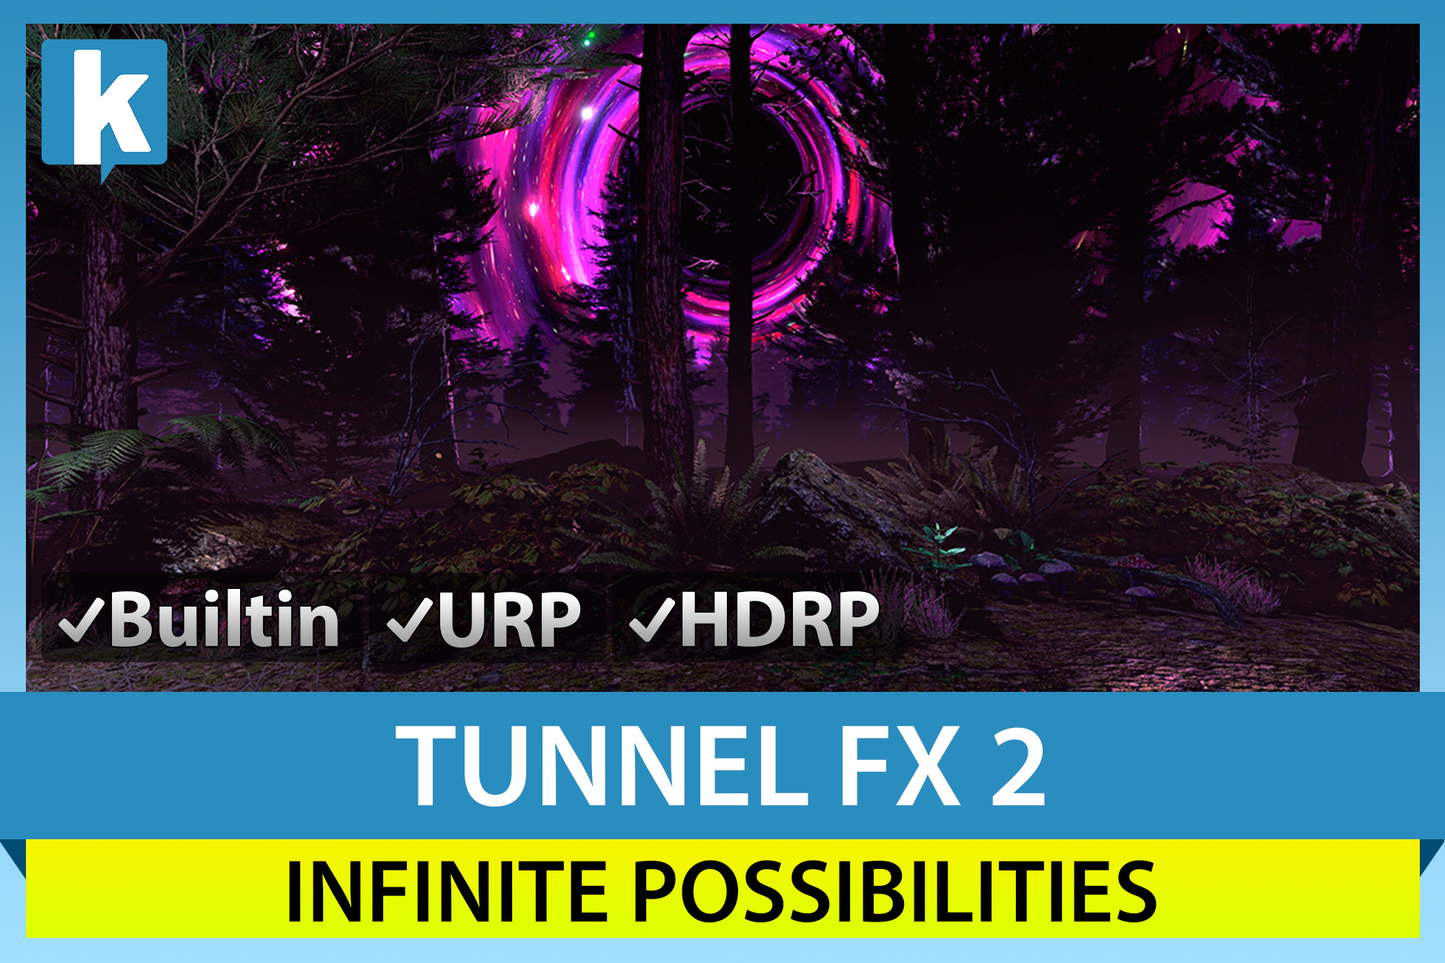 Tunnel FX 2